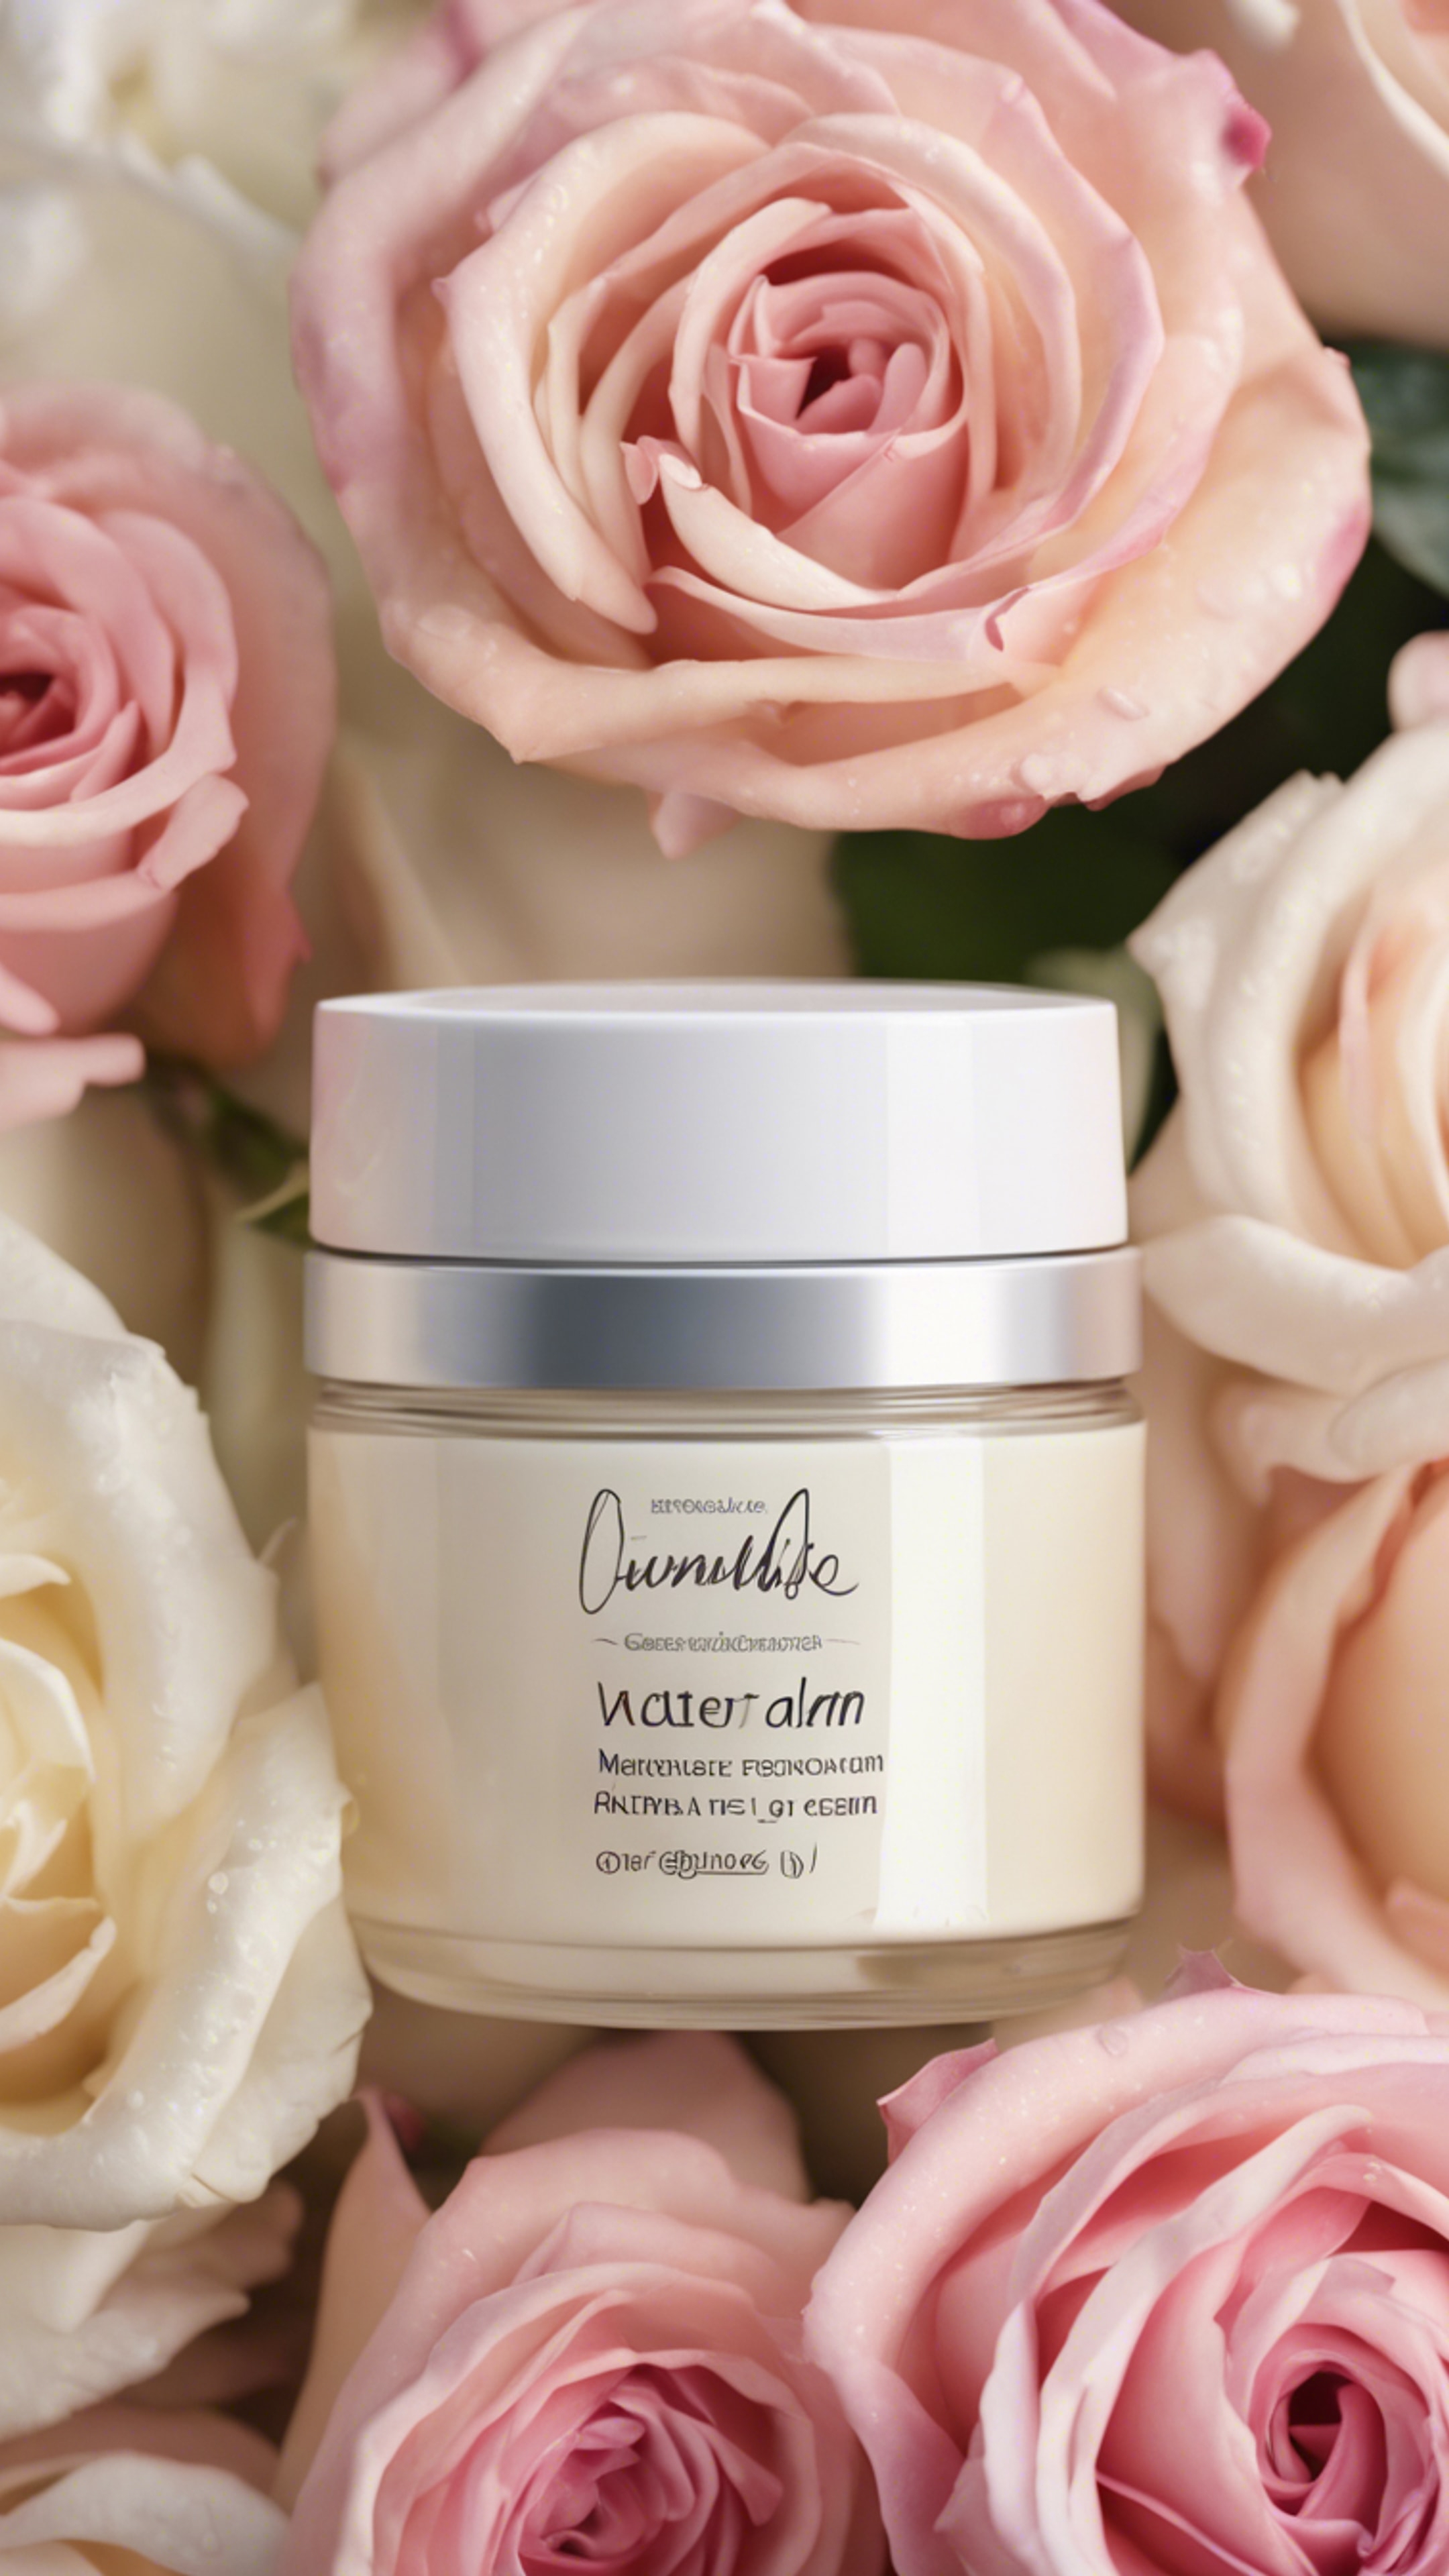 A jar of natural, luxurious, moisture-rich face cream placed amidst fresh roses. Обои[b9b99bd6ea5043dab5cc]